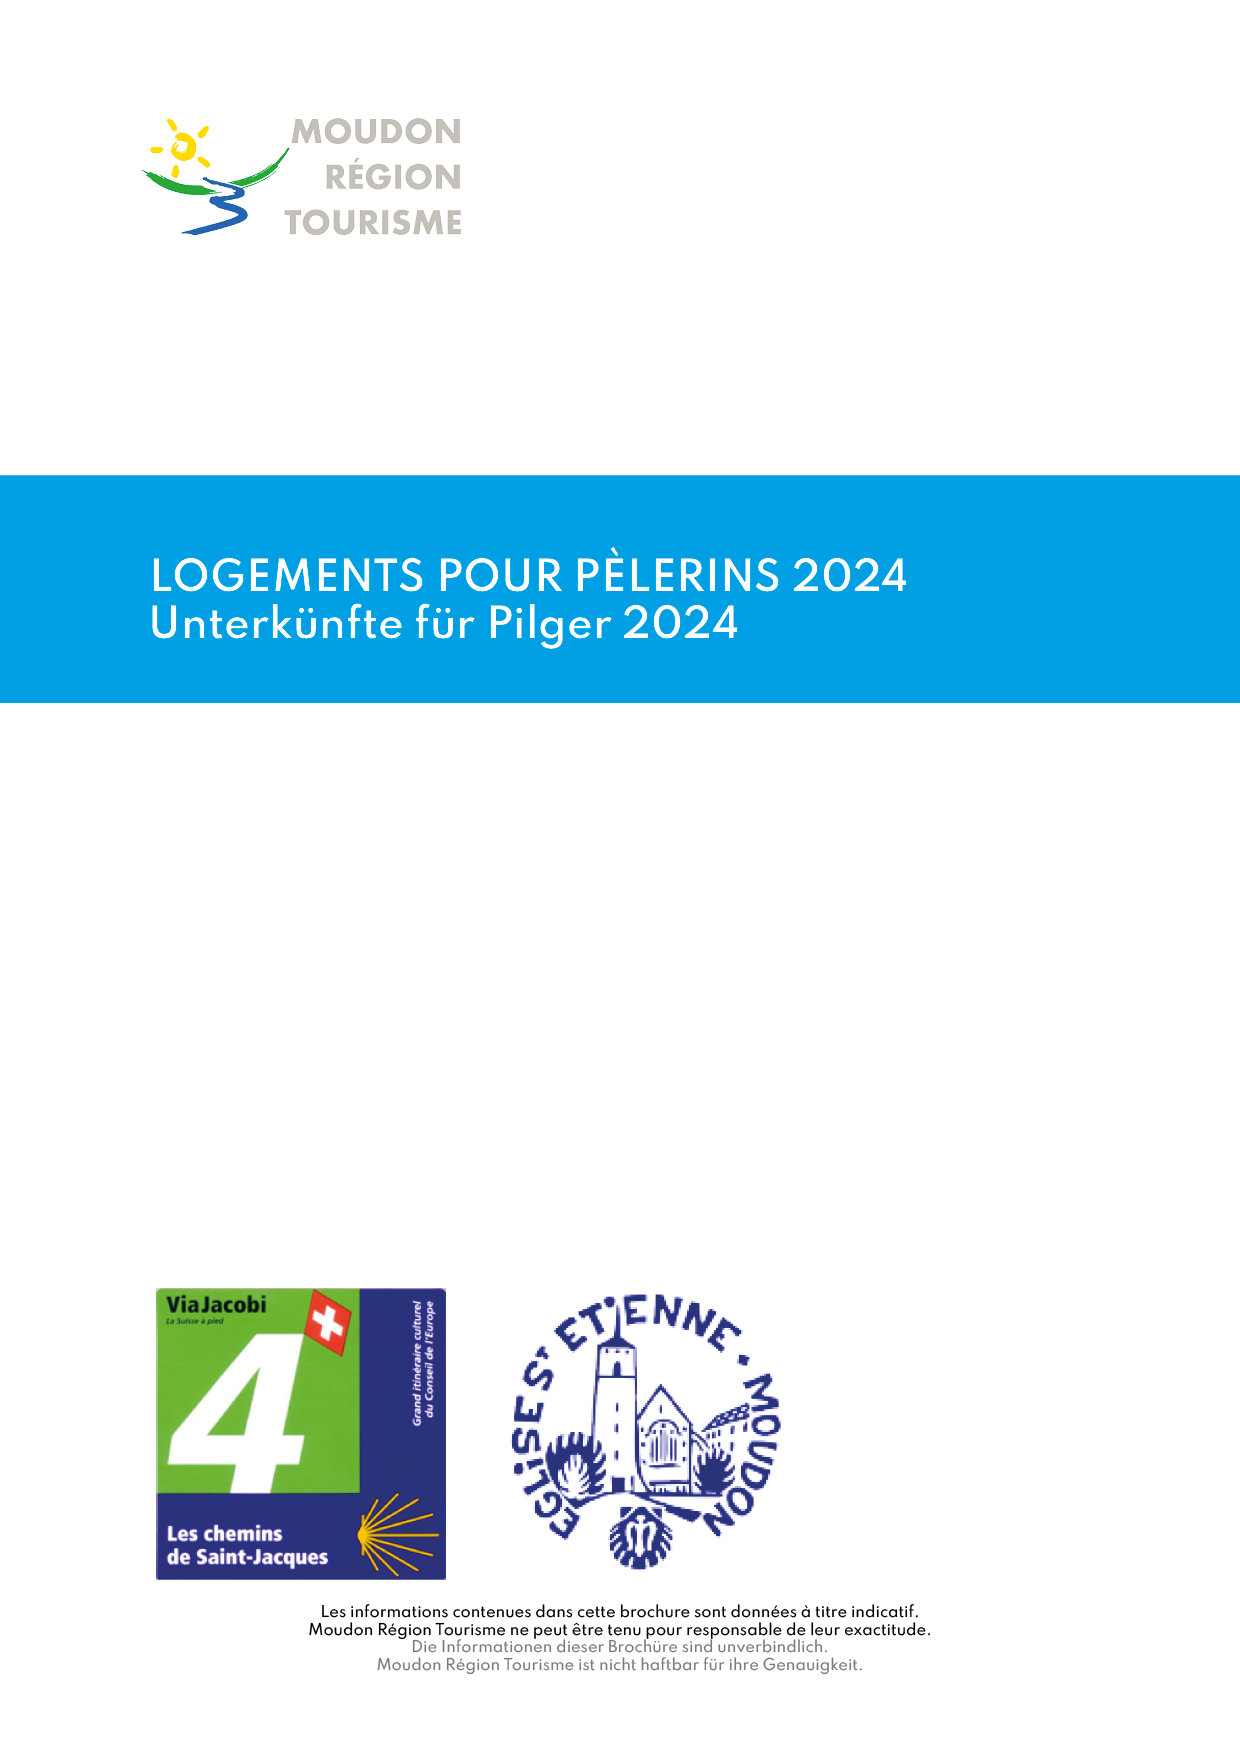 Logement pour pèlerins 2021